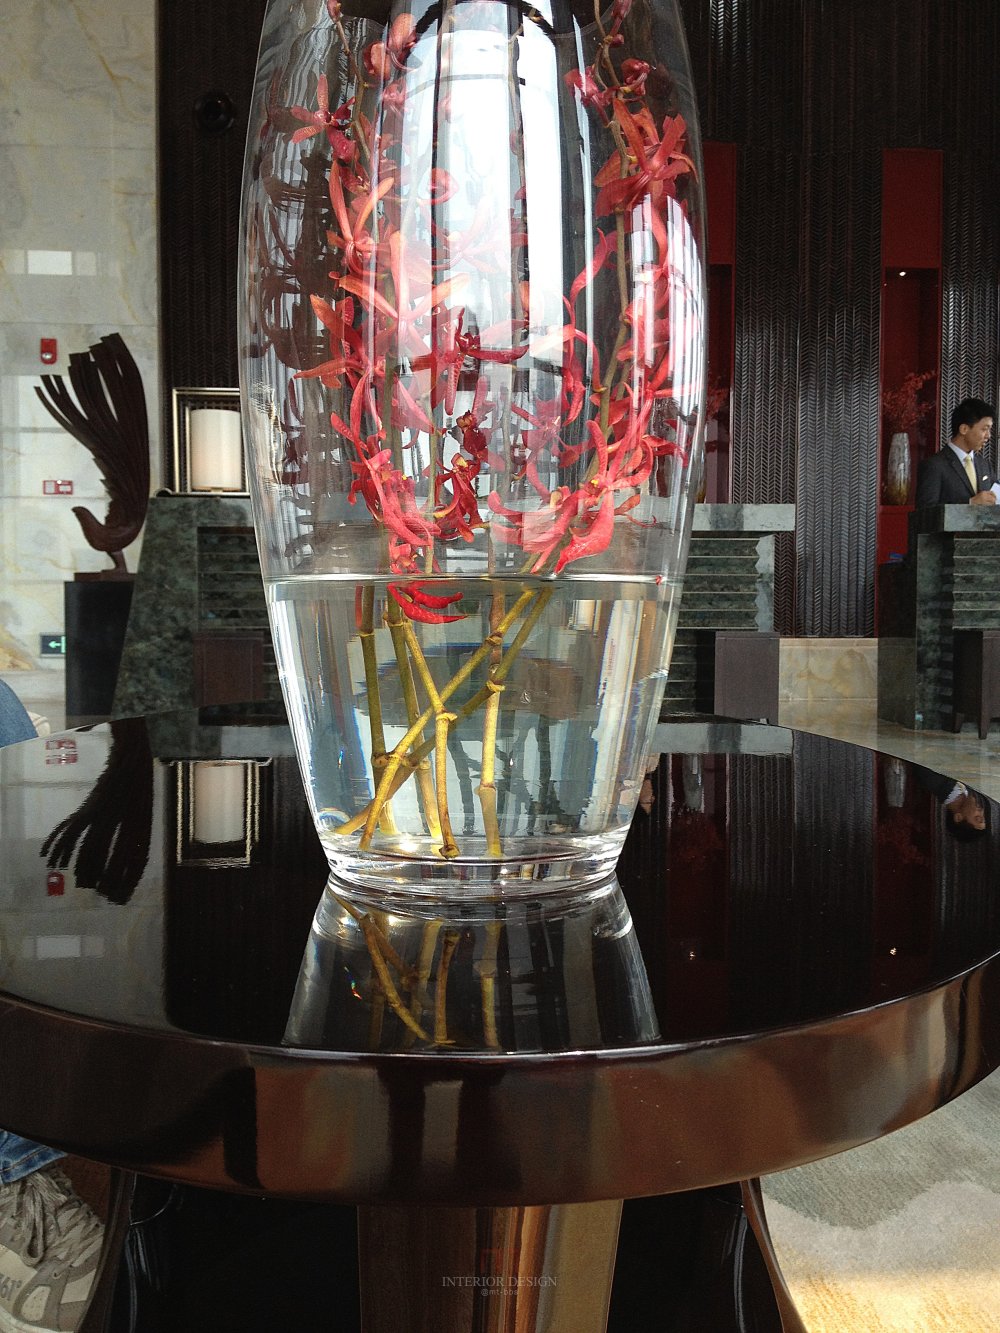 成都丽思卡尔顿酒店The Ritz-Carlton Chengdu(欢迎更新,高分奖励)_IMG_2922.jpg